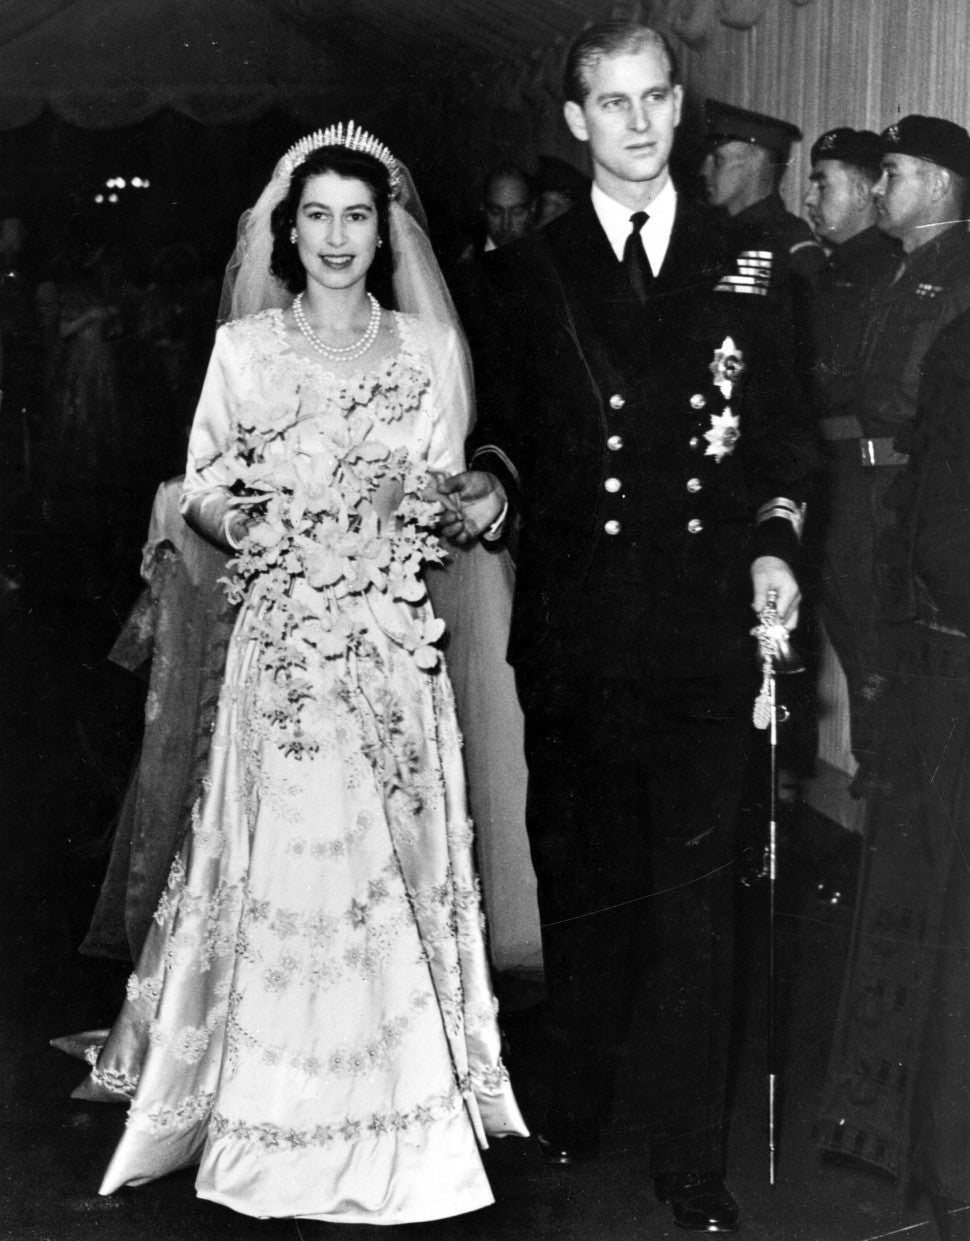 Queen Elizabeth marries Prince Philip in 1947.